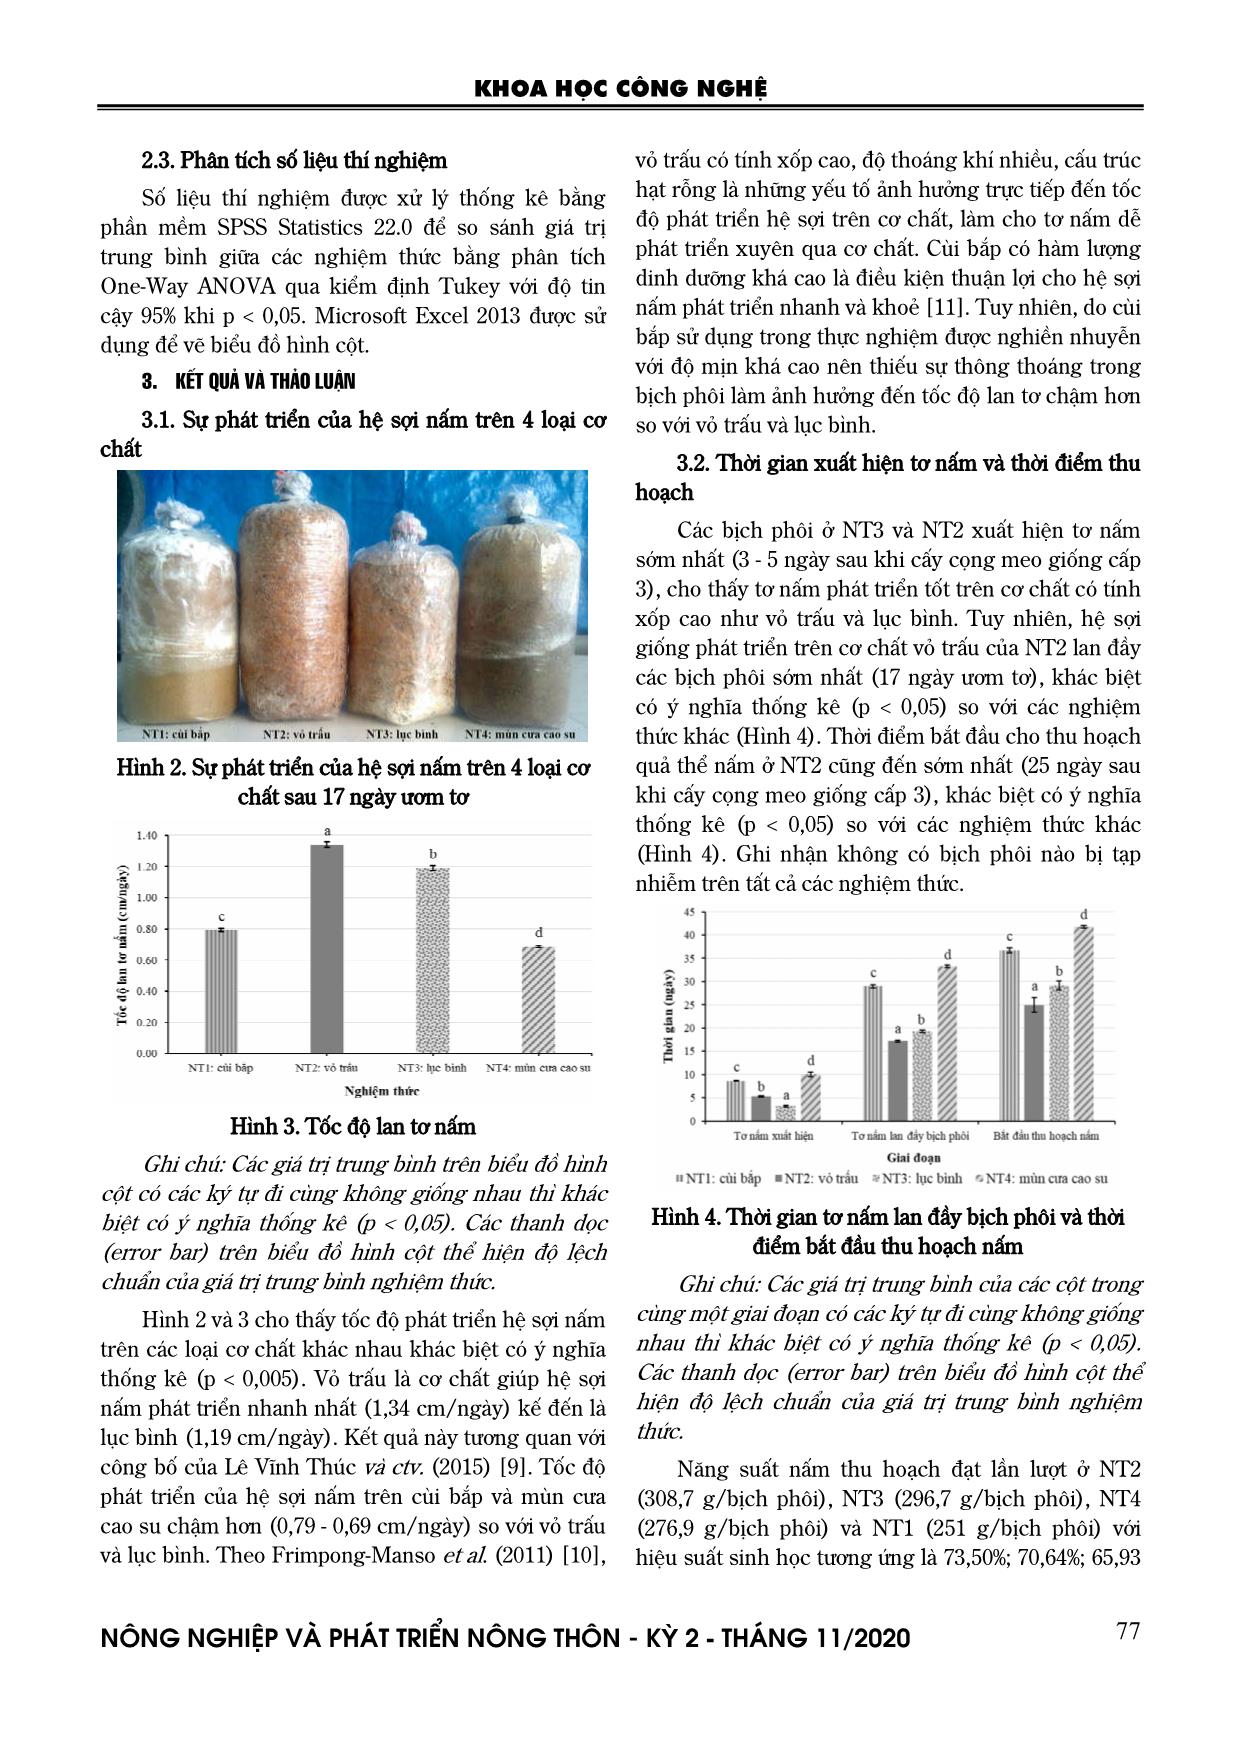 Nghiên cứu thử nghiệm trồng nấm bào ngư xám (Pleurotus sajor-caju (Fr.) Sing.) trên phụ phế phẩm cùi bắp, vỏ trấu và lục bình trang 3